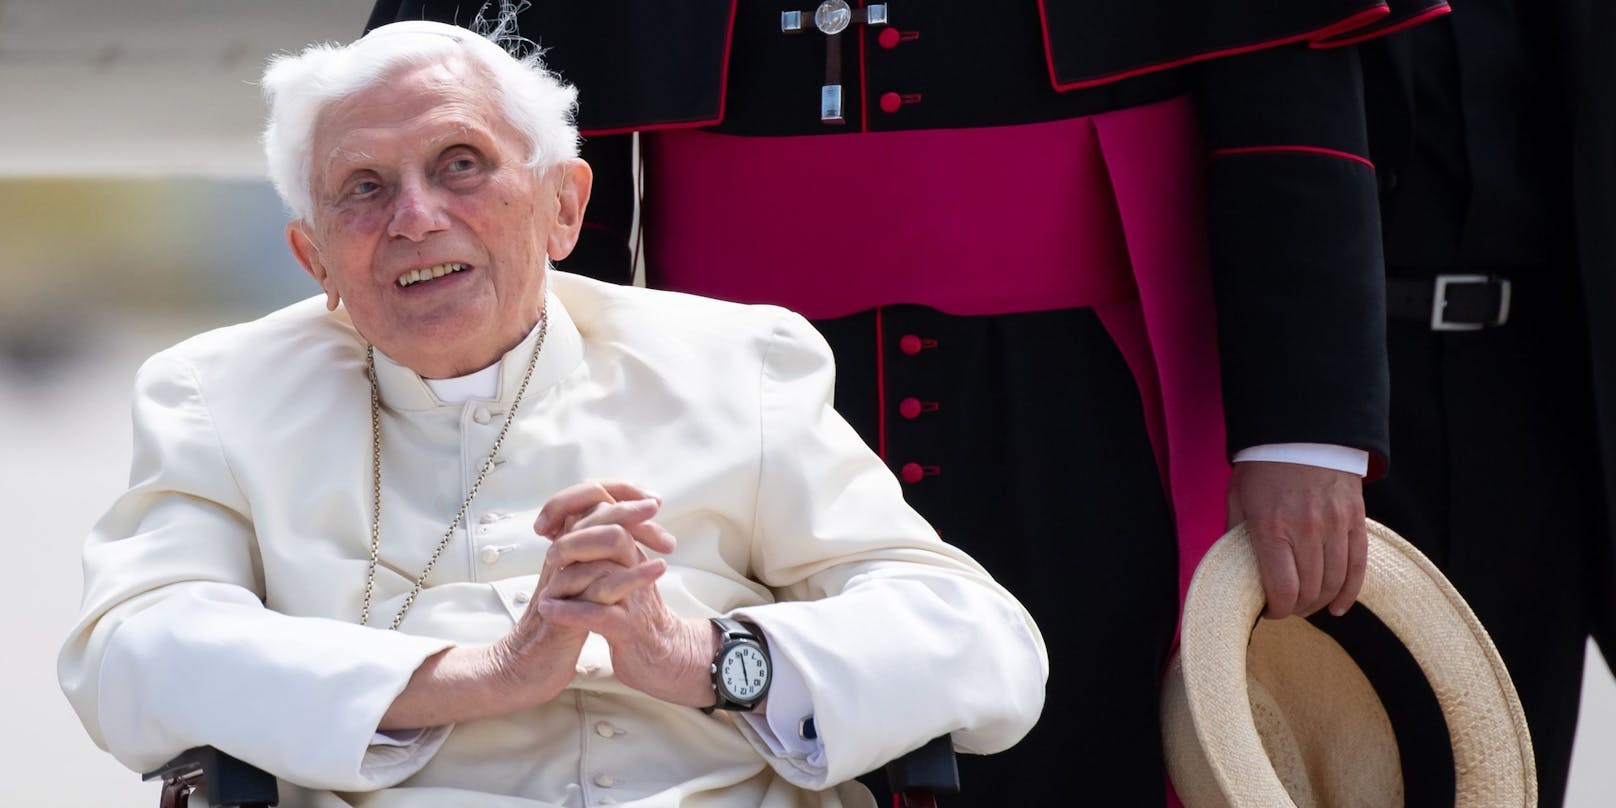 Der ehemalige Papst Benedikt soll in mehreren Missbrauchsfällen nichts gegen die Verantwortlichen unternommen haben.